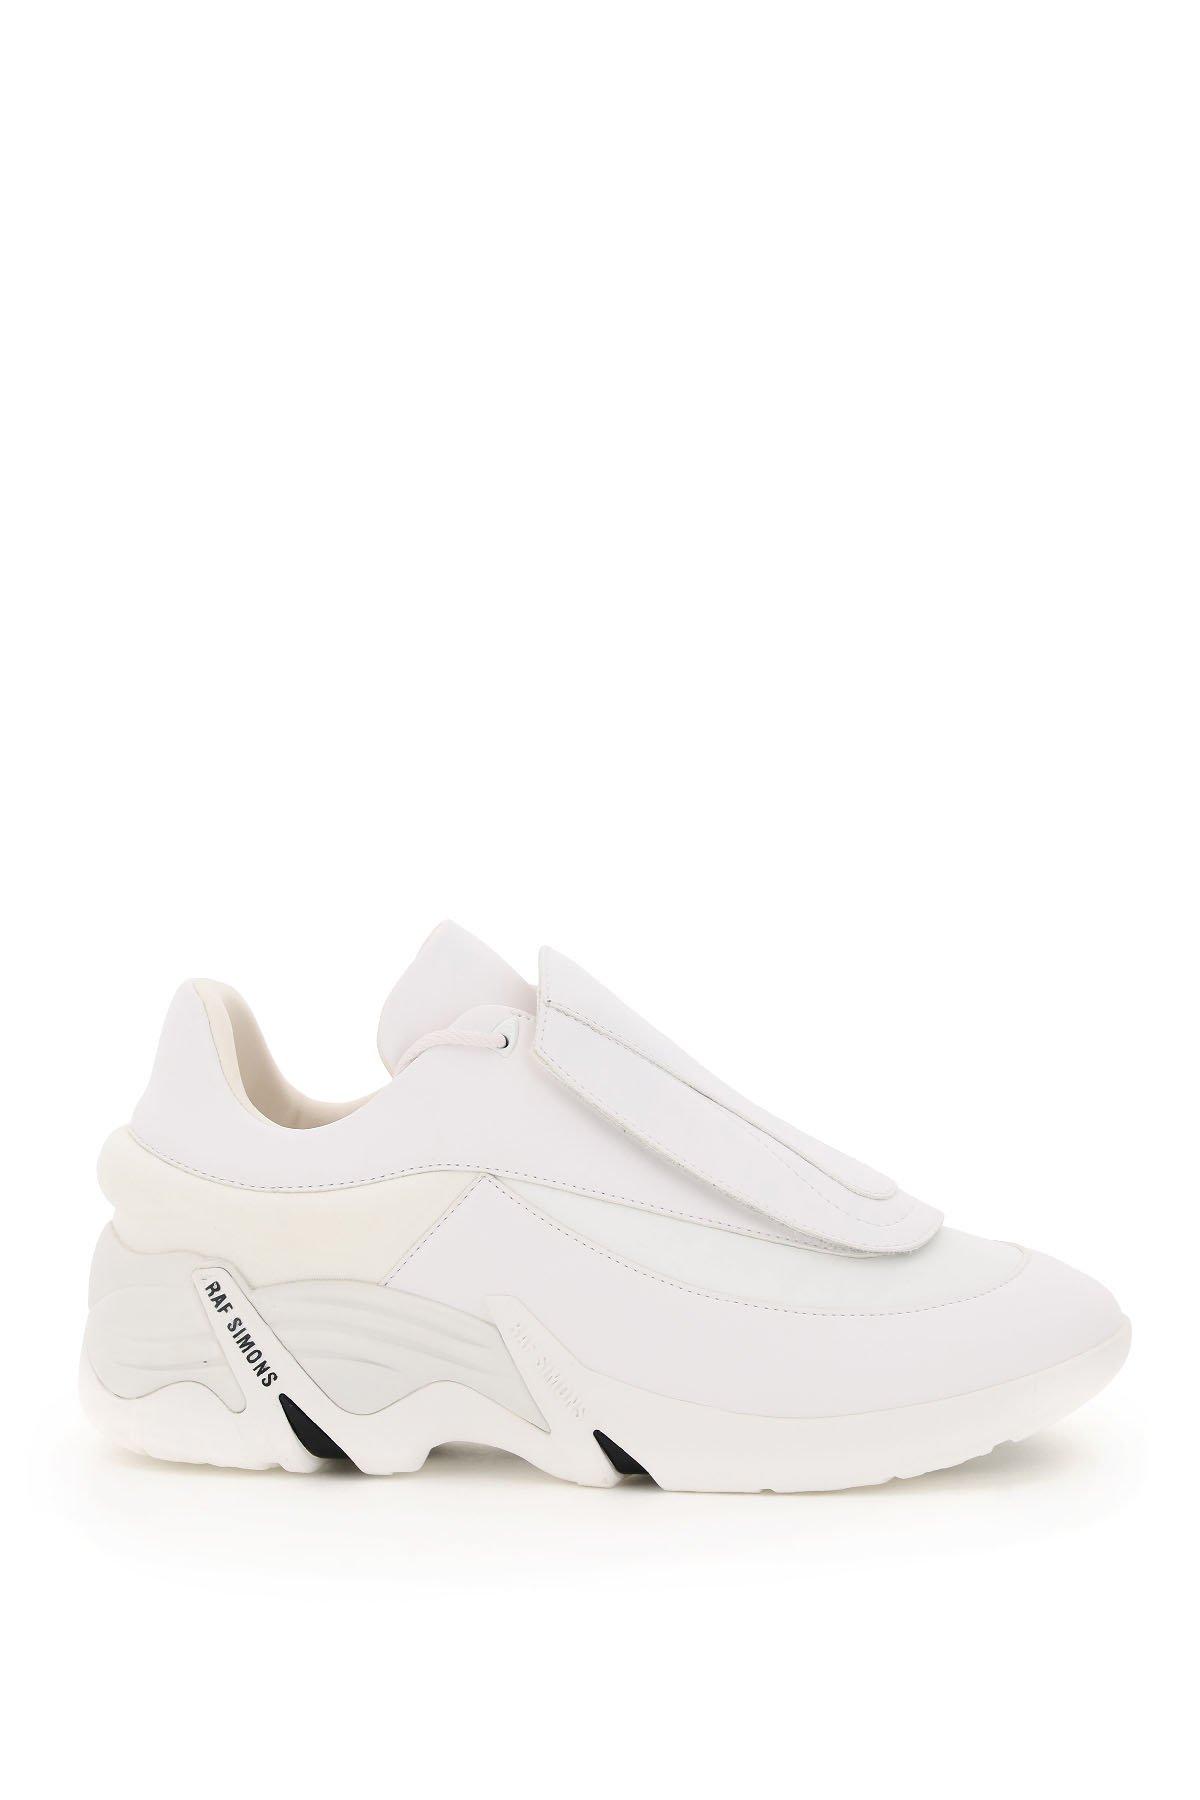 Raf Simons Synthetic Antei Runner Sneakers in White for Men - Lyst